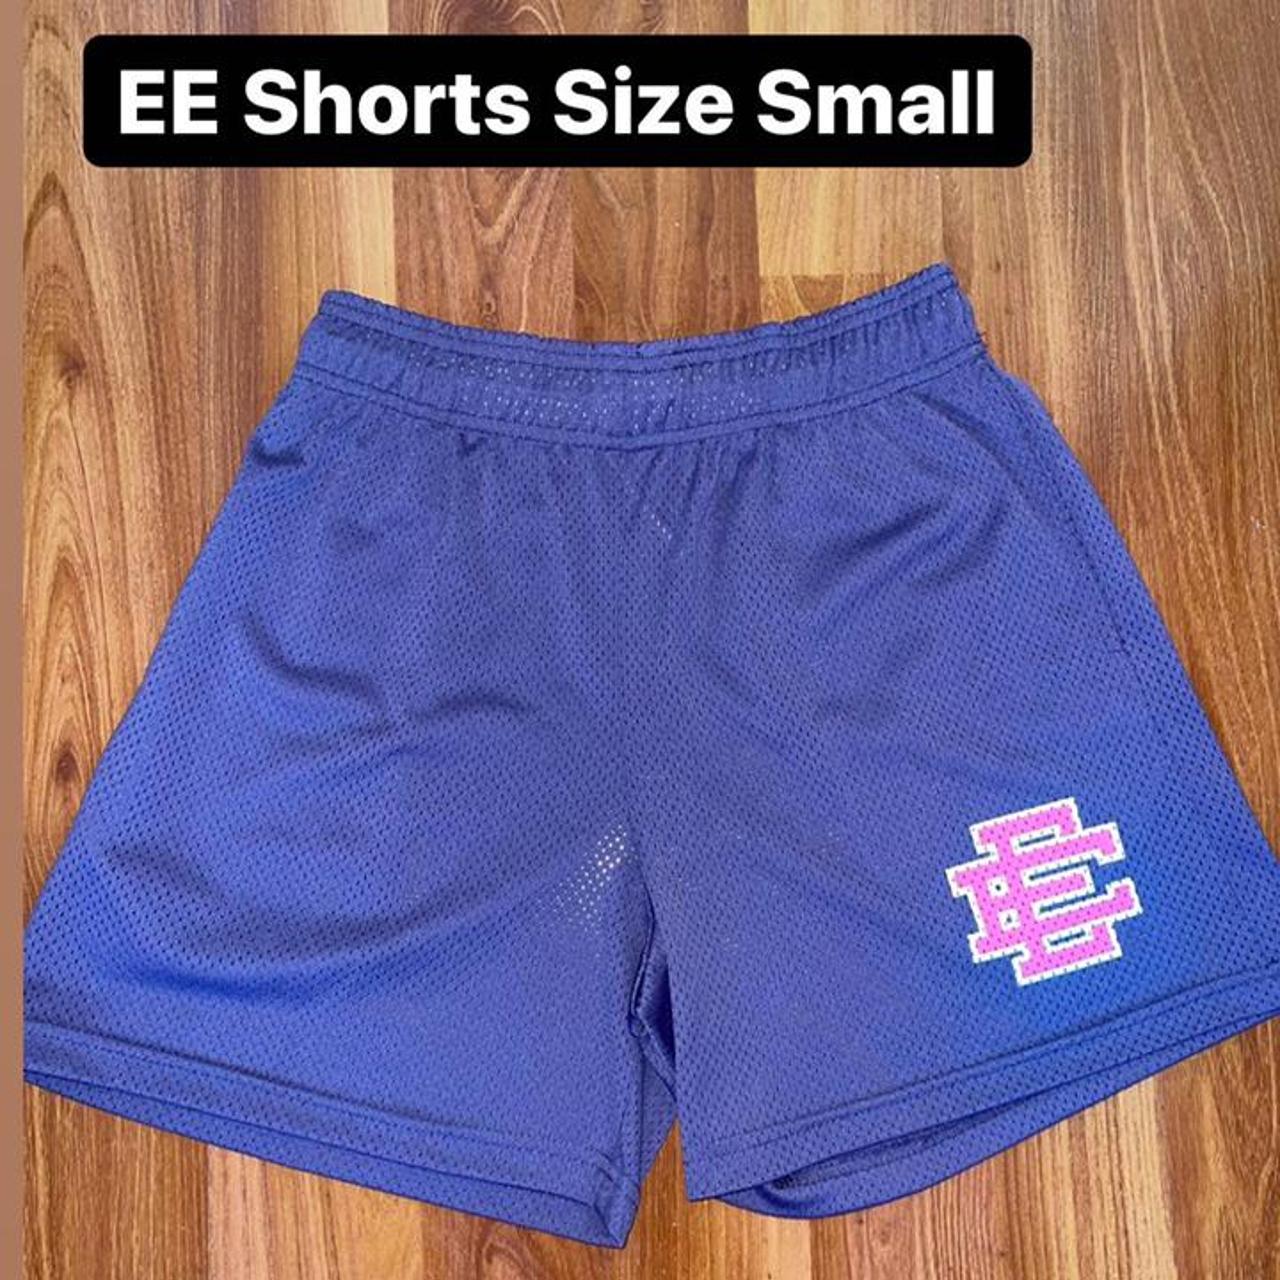 Product Image 1 - Eric Emmanuel shorts

#stylish #streetwear #shorts